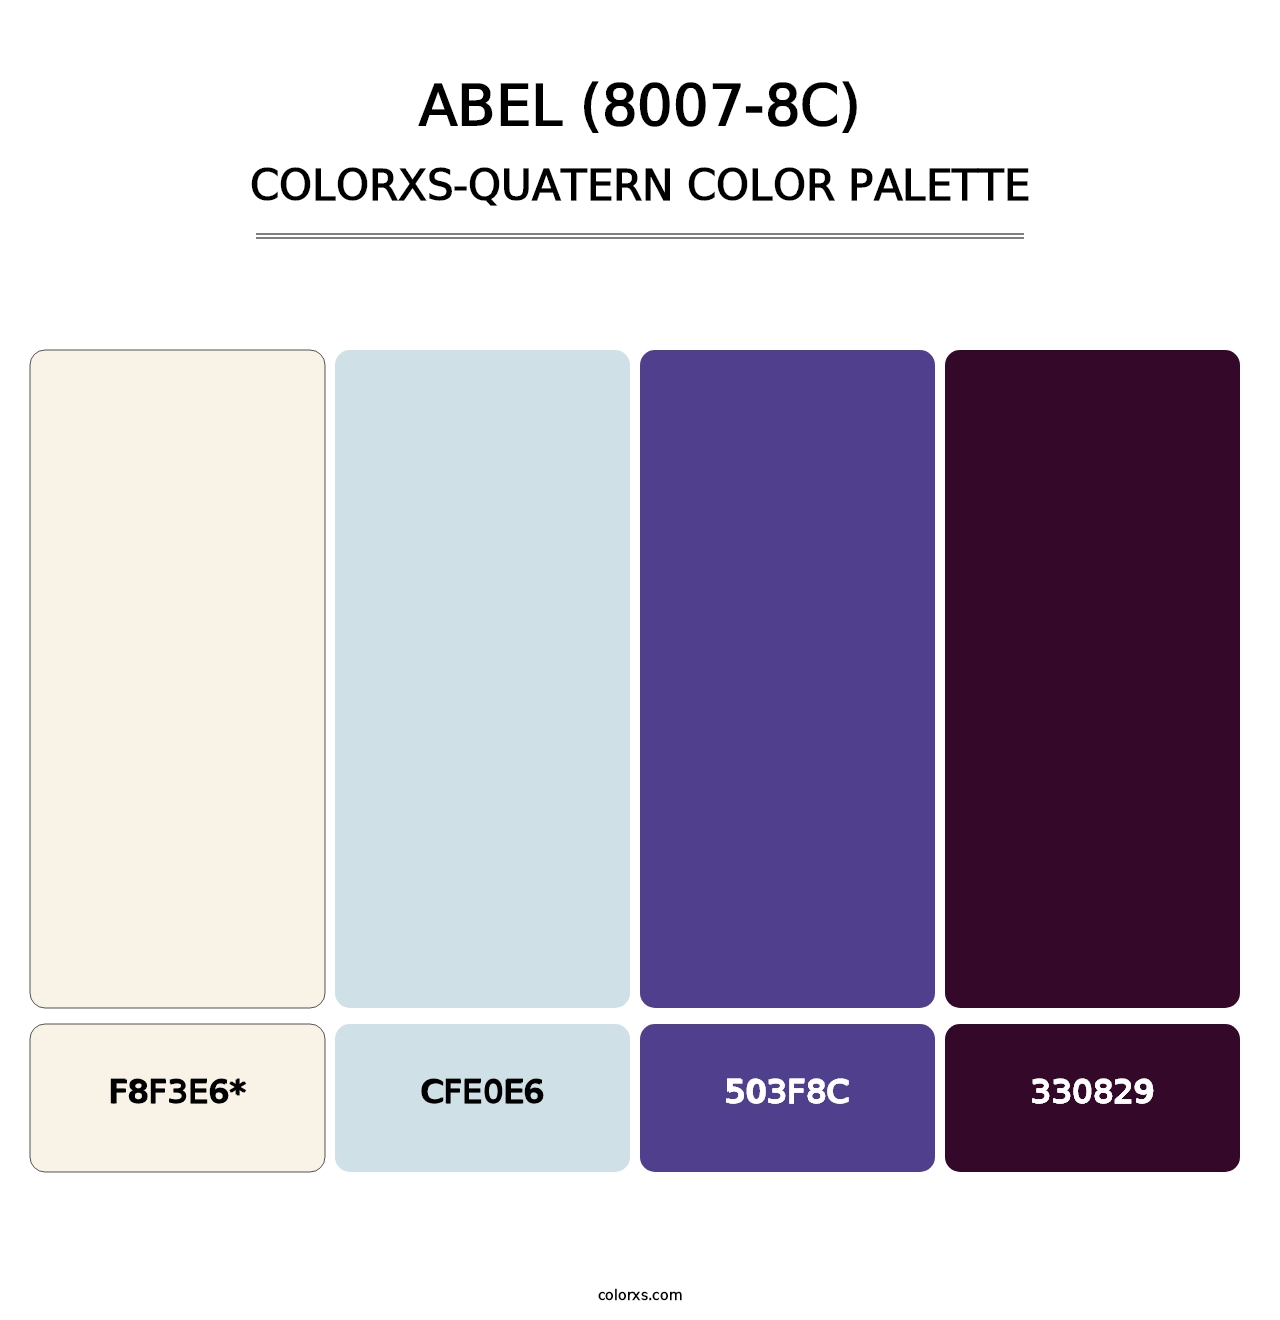 Abel (8007-8C) - Colorxs Quatern Palette